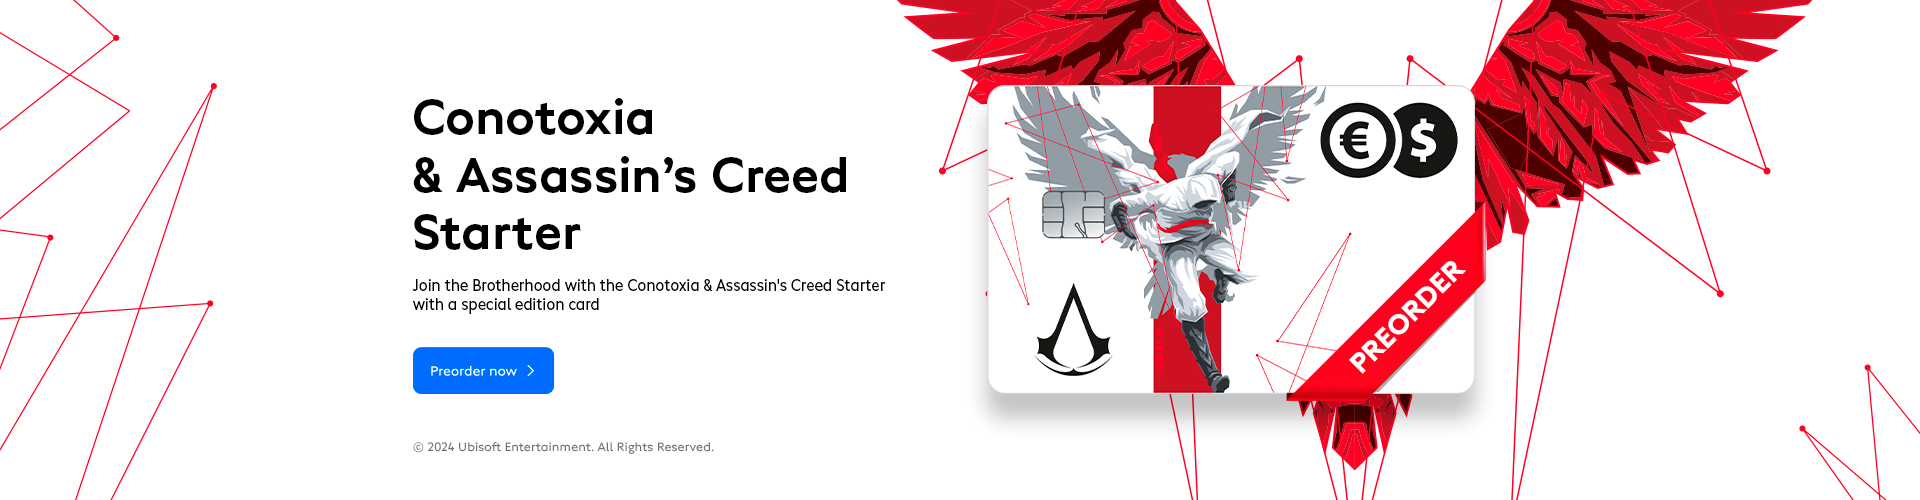 Conotoxia & Assassin's Creed Starter